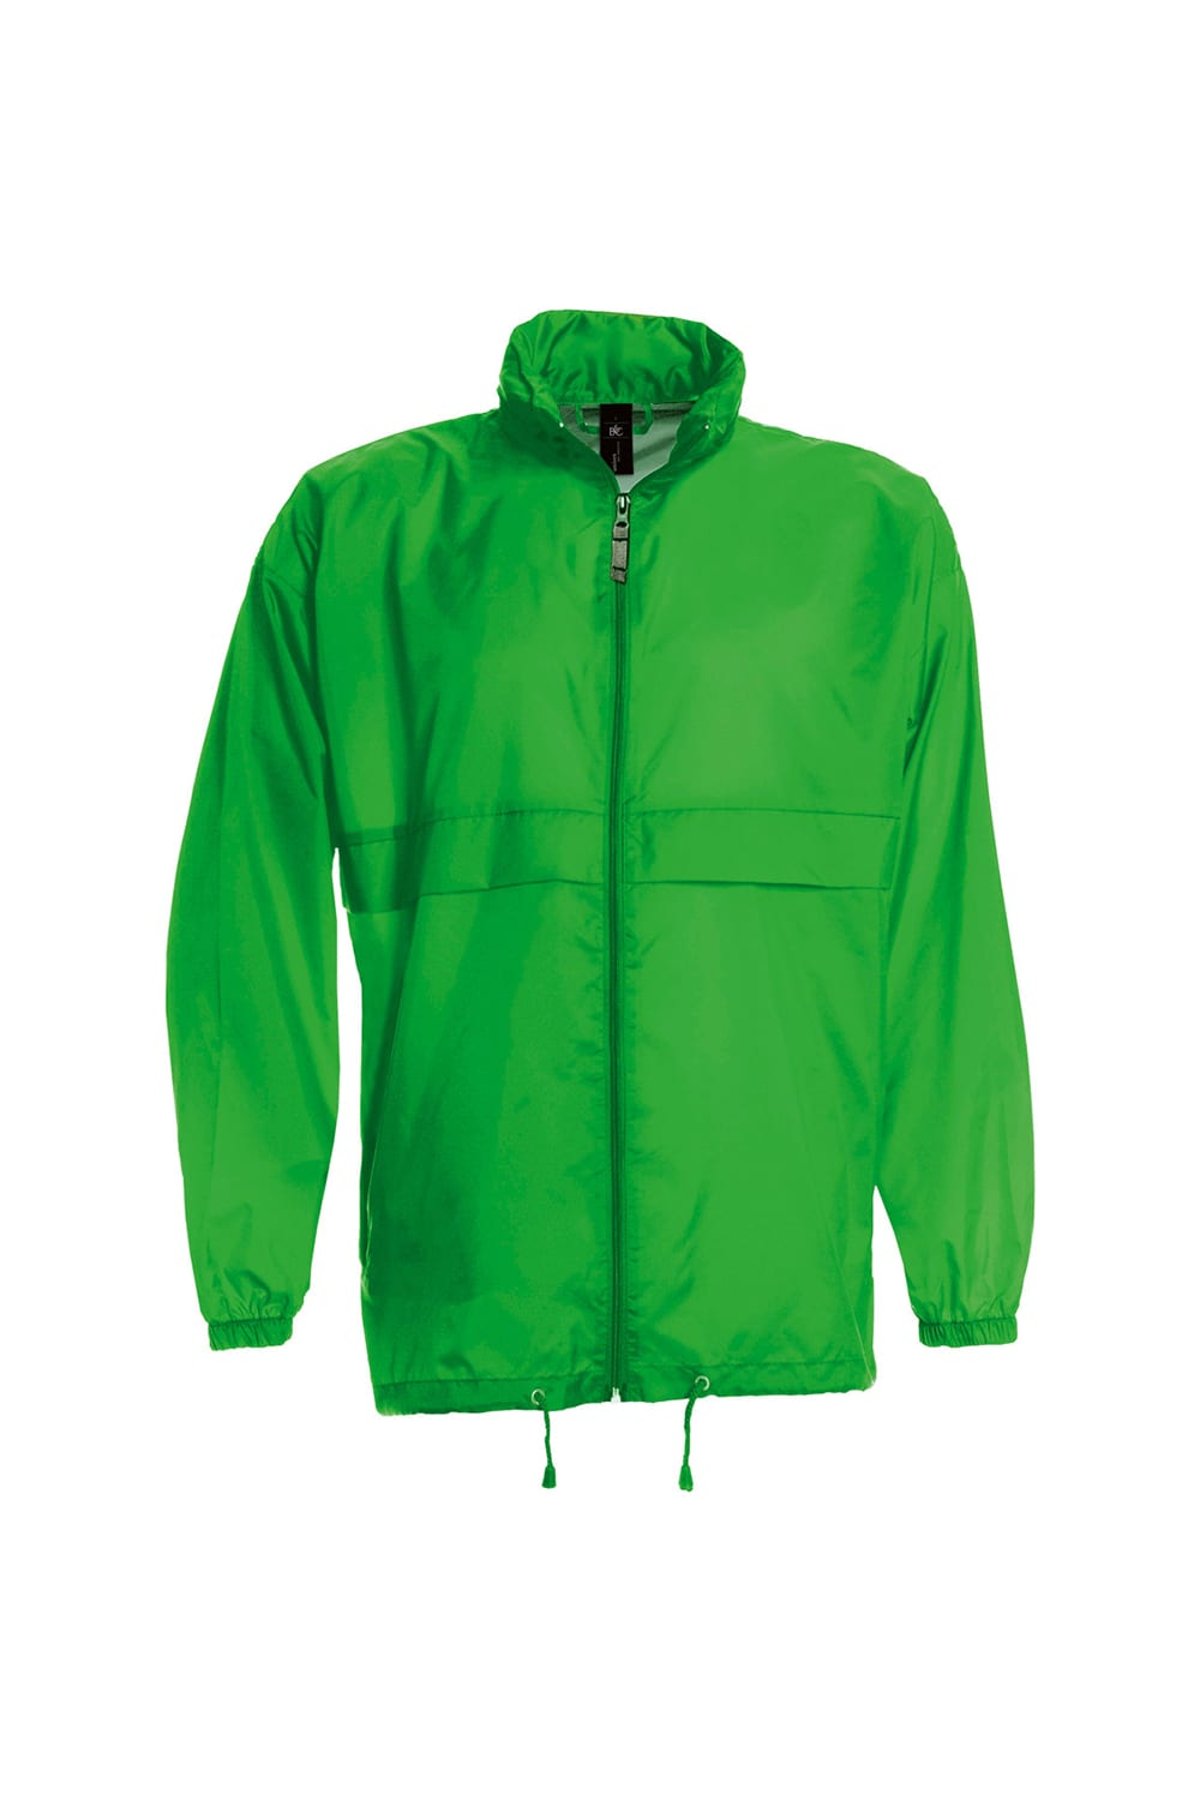 Real Green Showerproof & Water Repellent Jacket B&C Womens/Ladies Sirocco Lightweight Windproof S